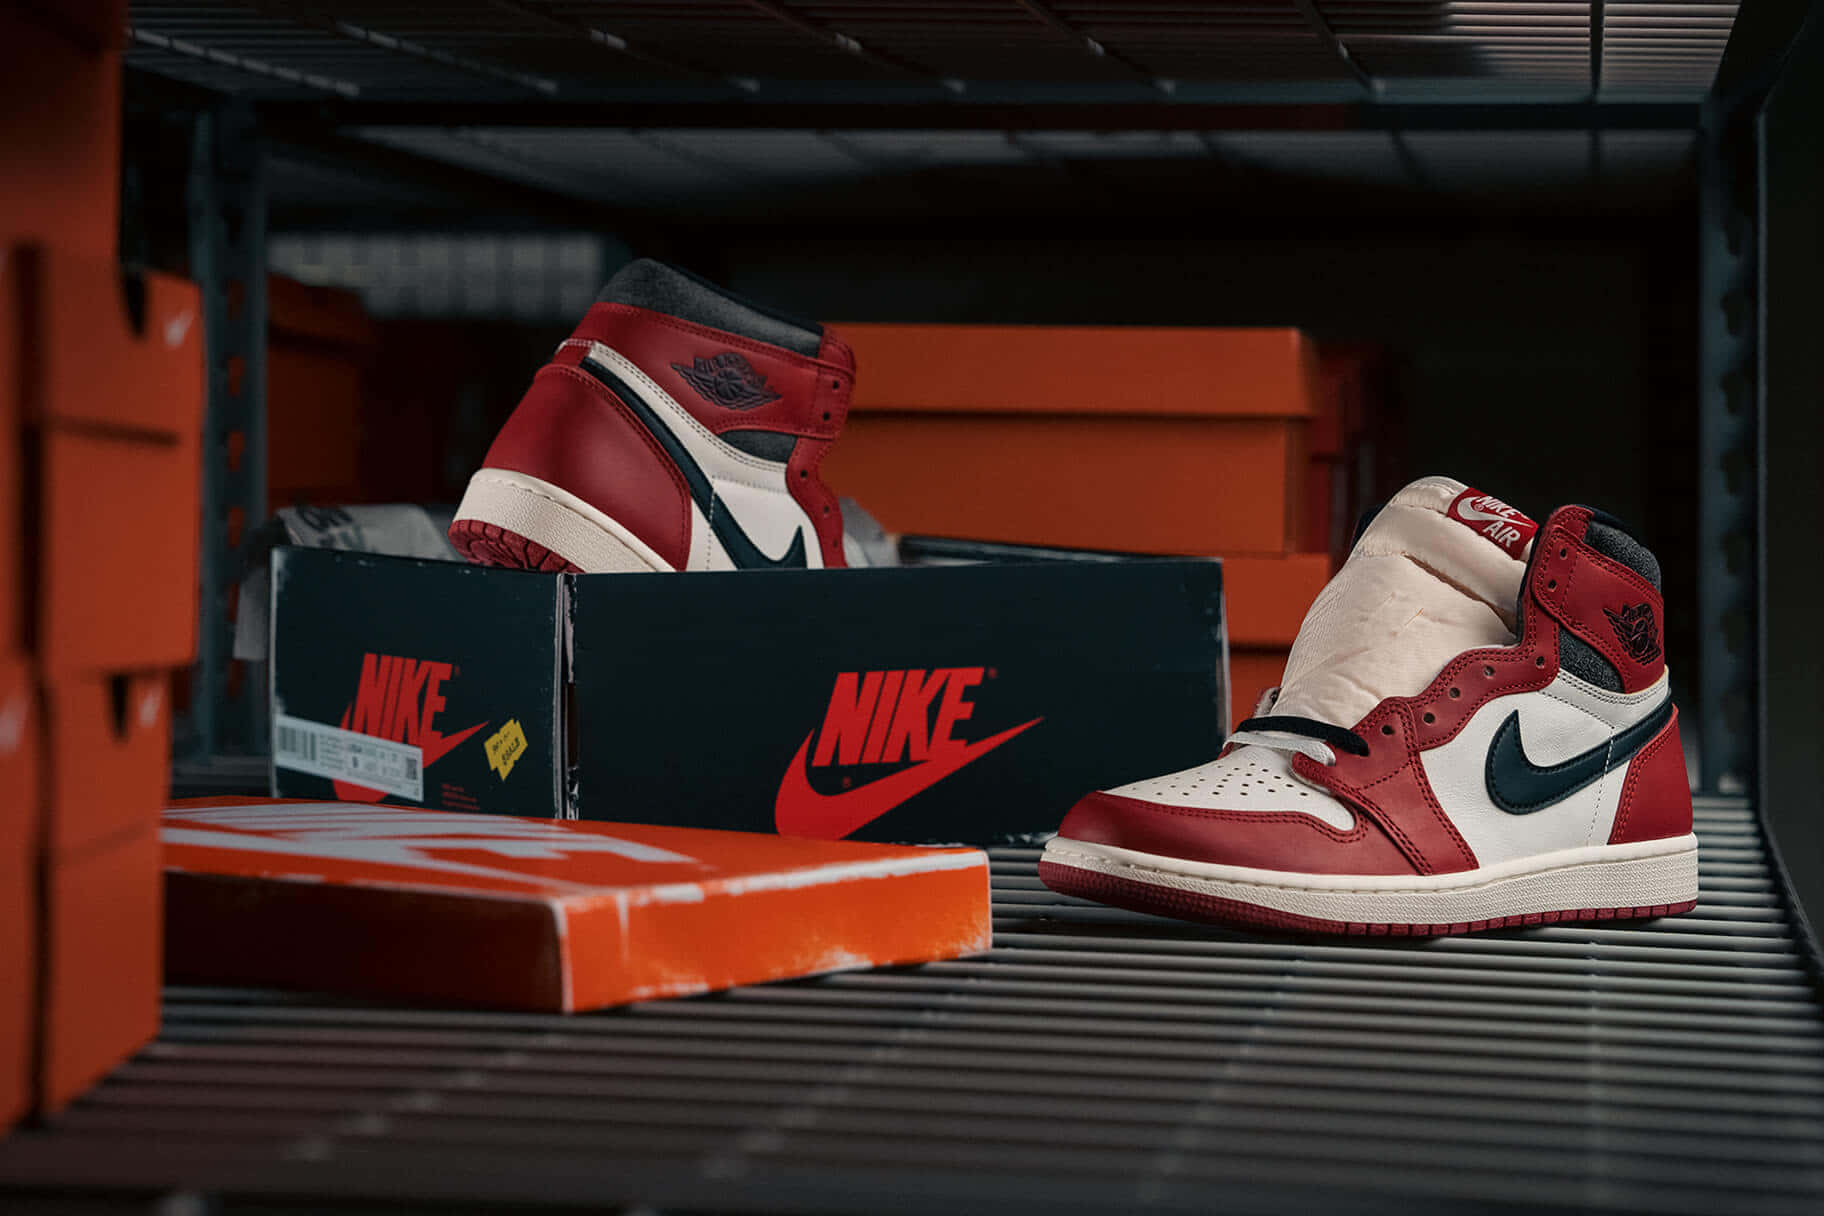 Cajasdel Nike Jordan Air 1 Fondo de pantalla